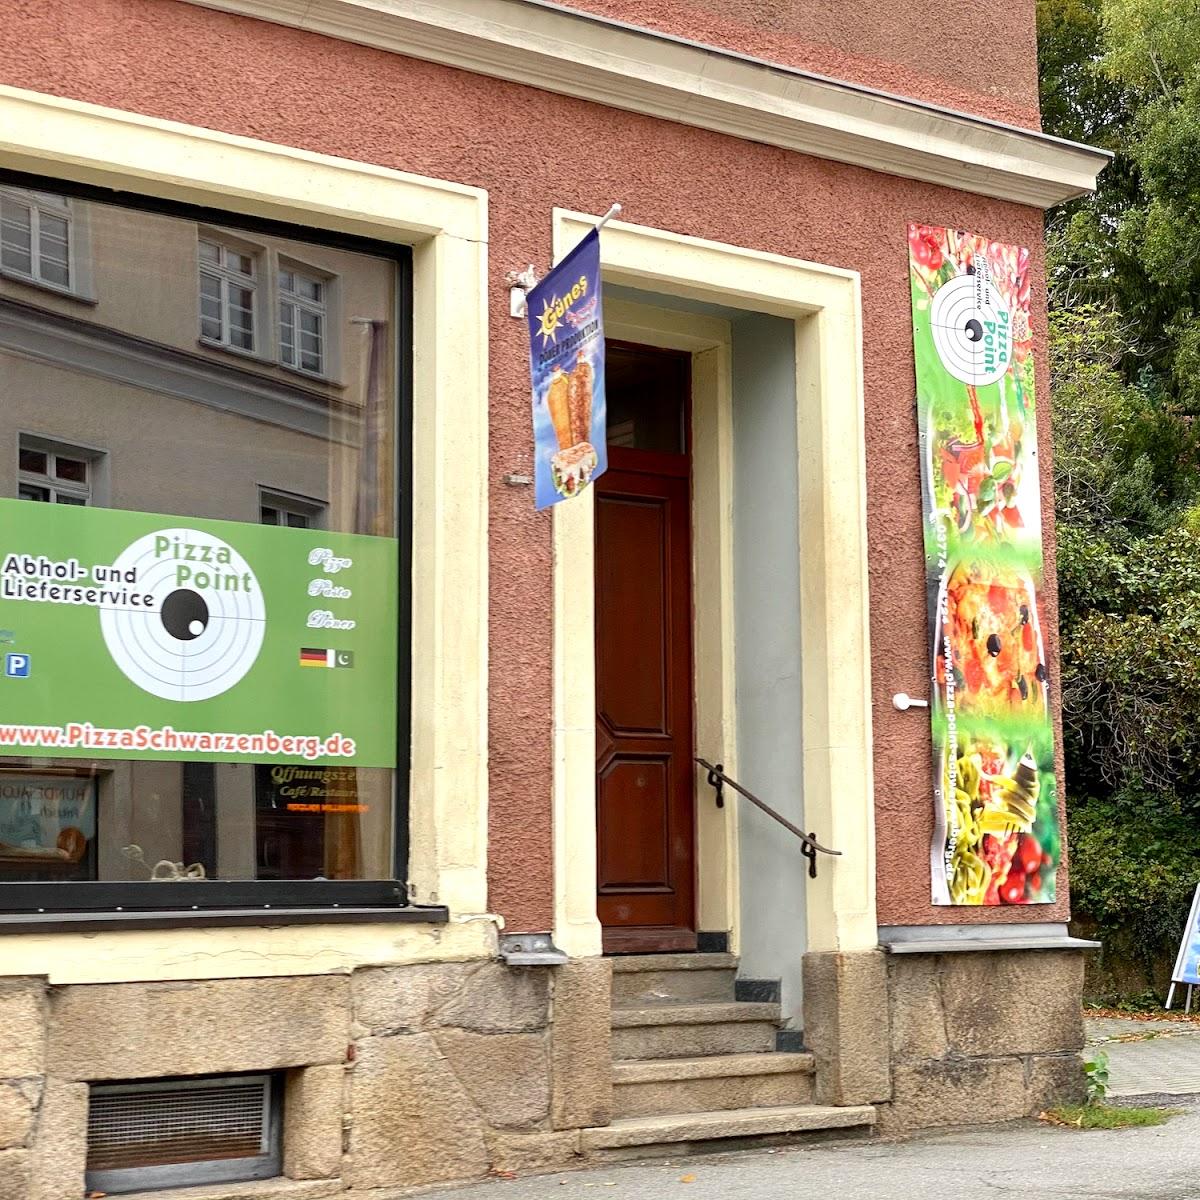 Restaurant "Jochen Weigel Bäckerei" in  Breitenbrunn-Erzgebirge